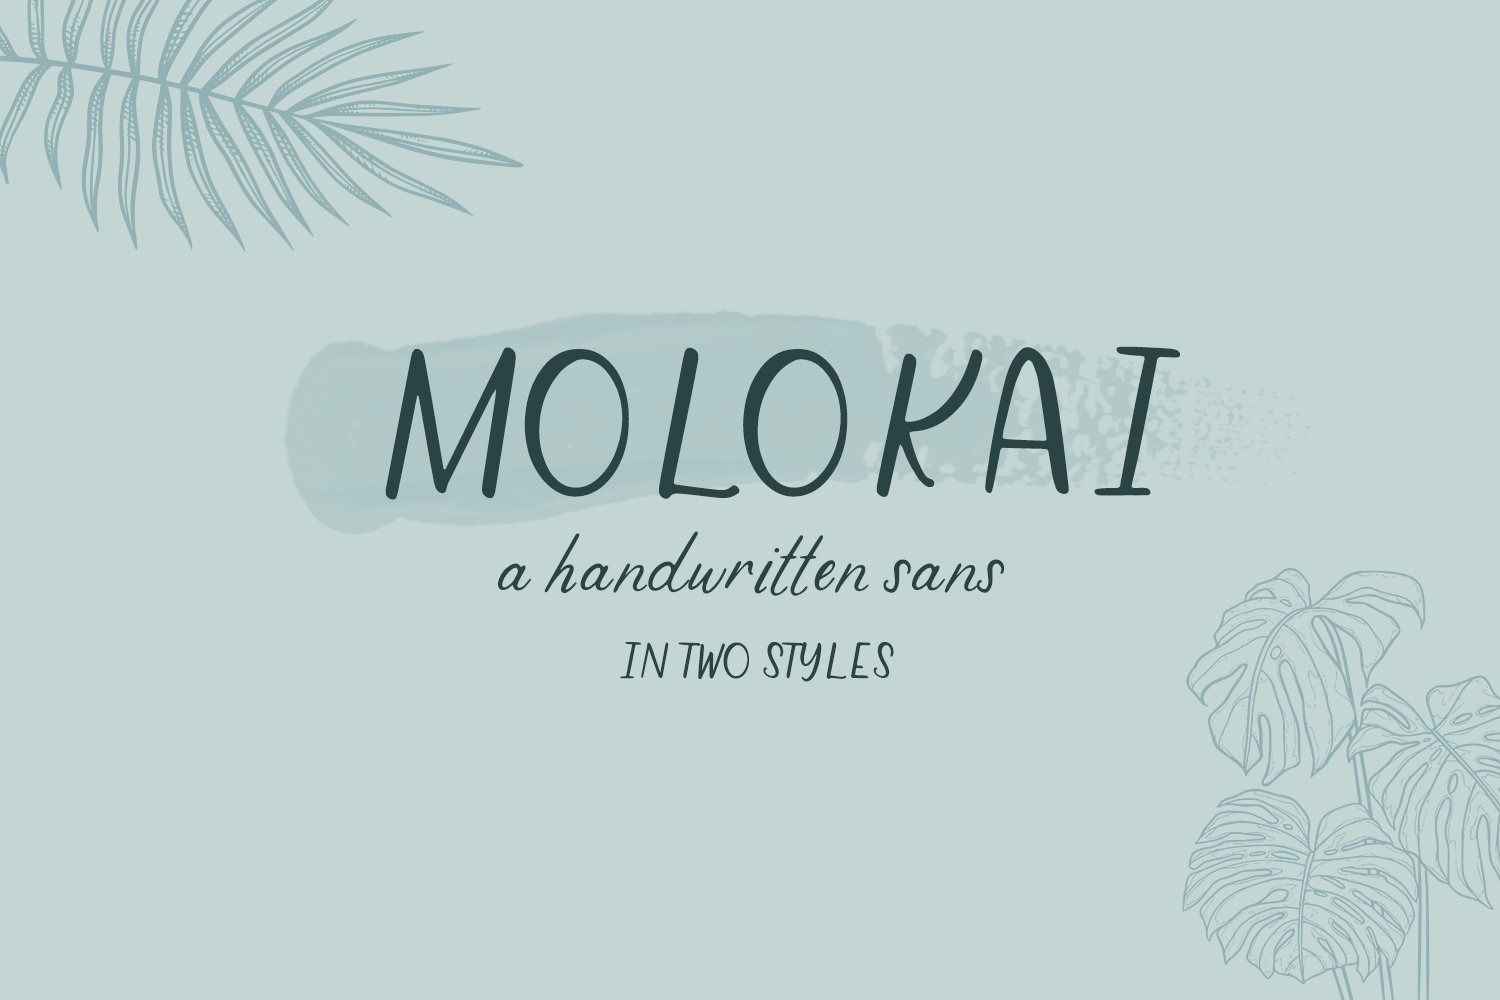 Molokai Sans Duo cover image.